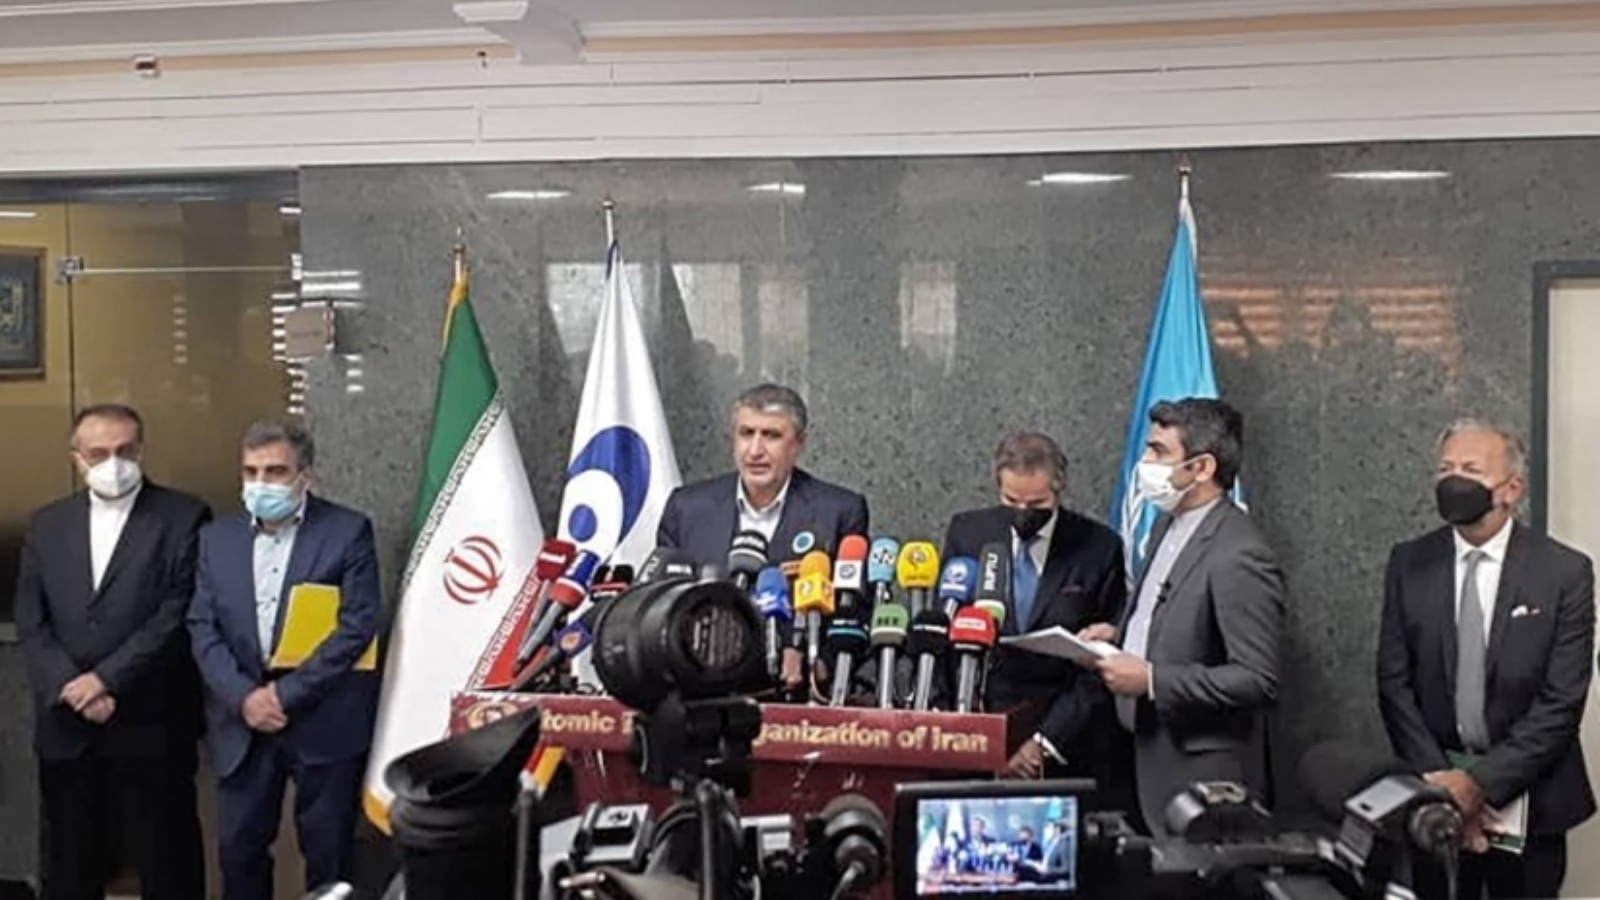 المدير العام للوكالة الدولية للطاقة الذرية، رافائيل غروسي (يمين الوسط)، ورئيس منظمة الطاقة الذرية الإيرانية محمد إسلامي (يسار الوسط)، خلال مؤتمر صحفي في العاصمة طهران. الثلاثاء 23 تشرين الثاني/نوفمبر 2021.